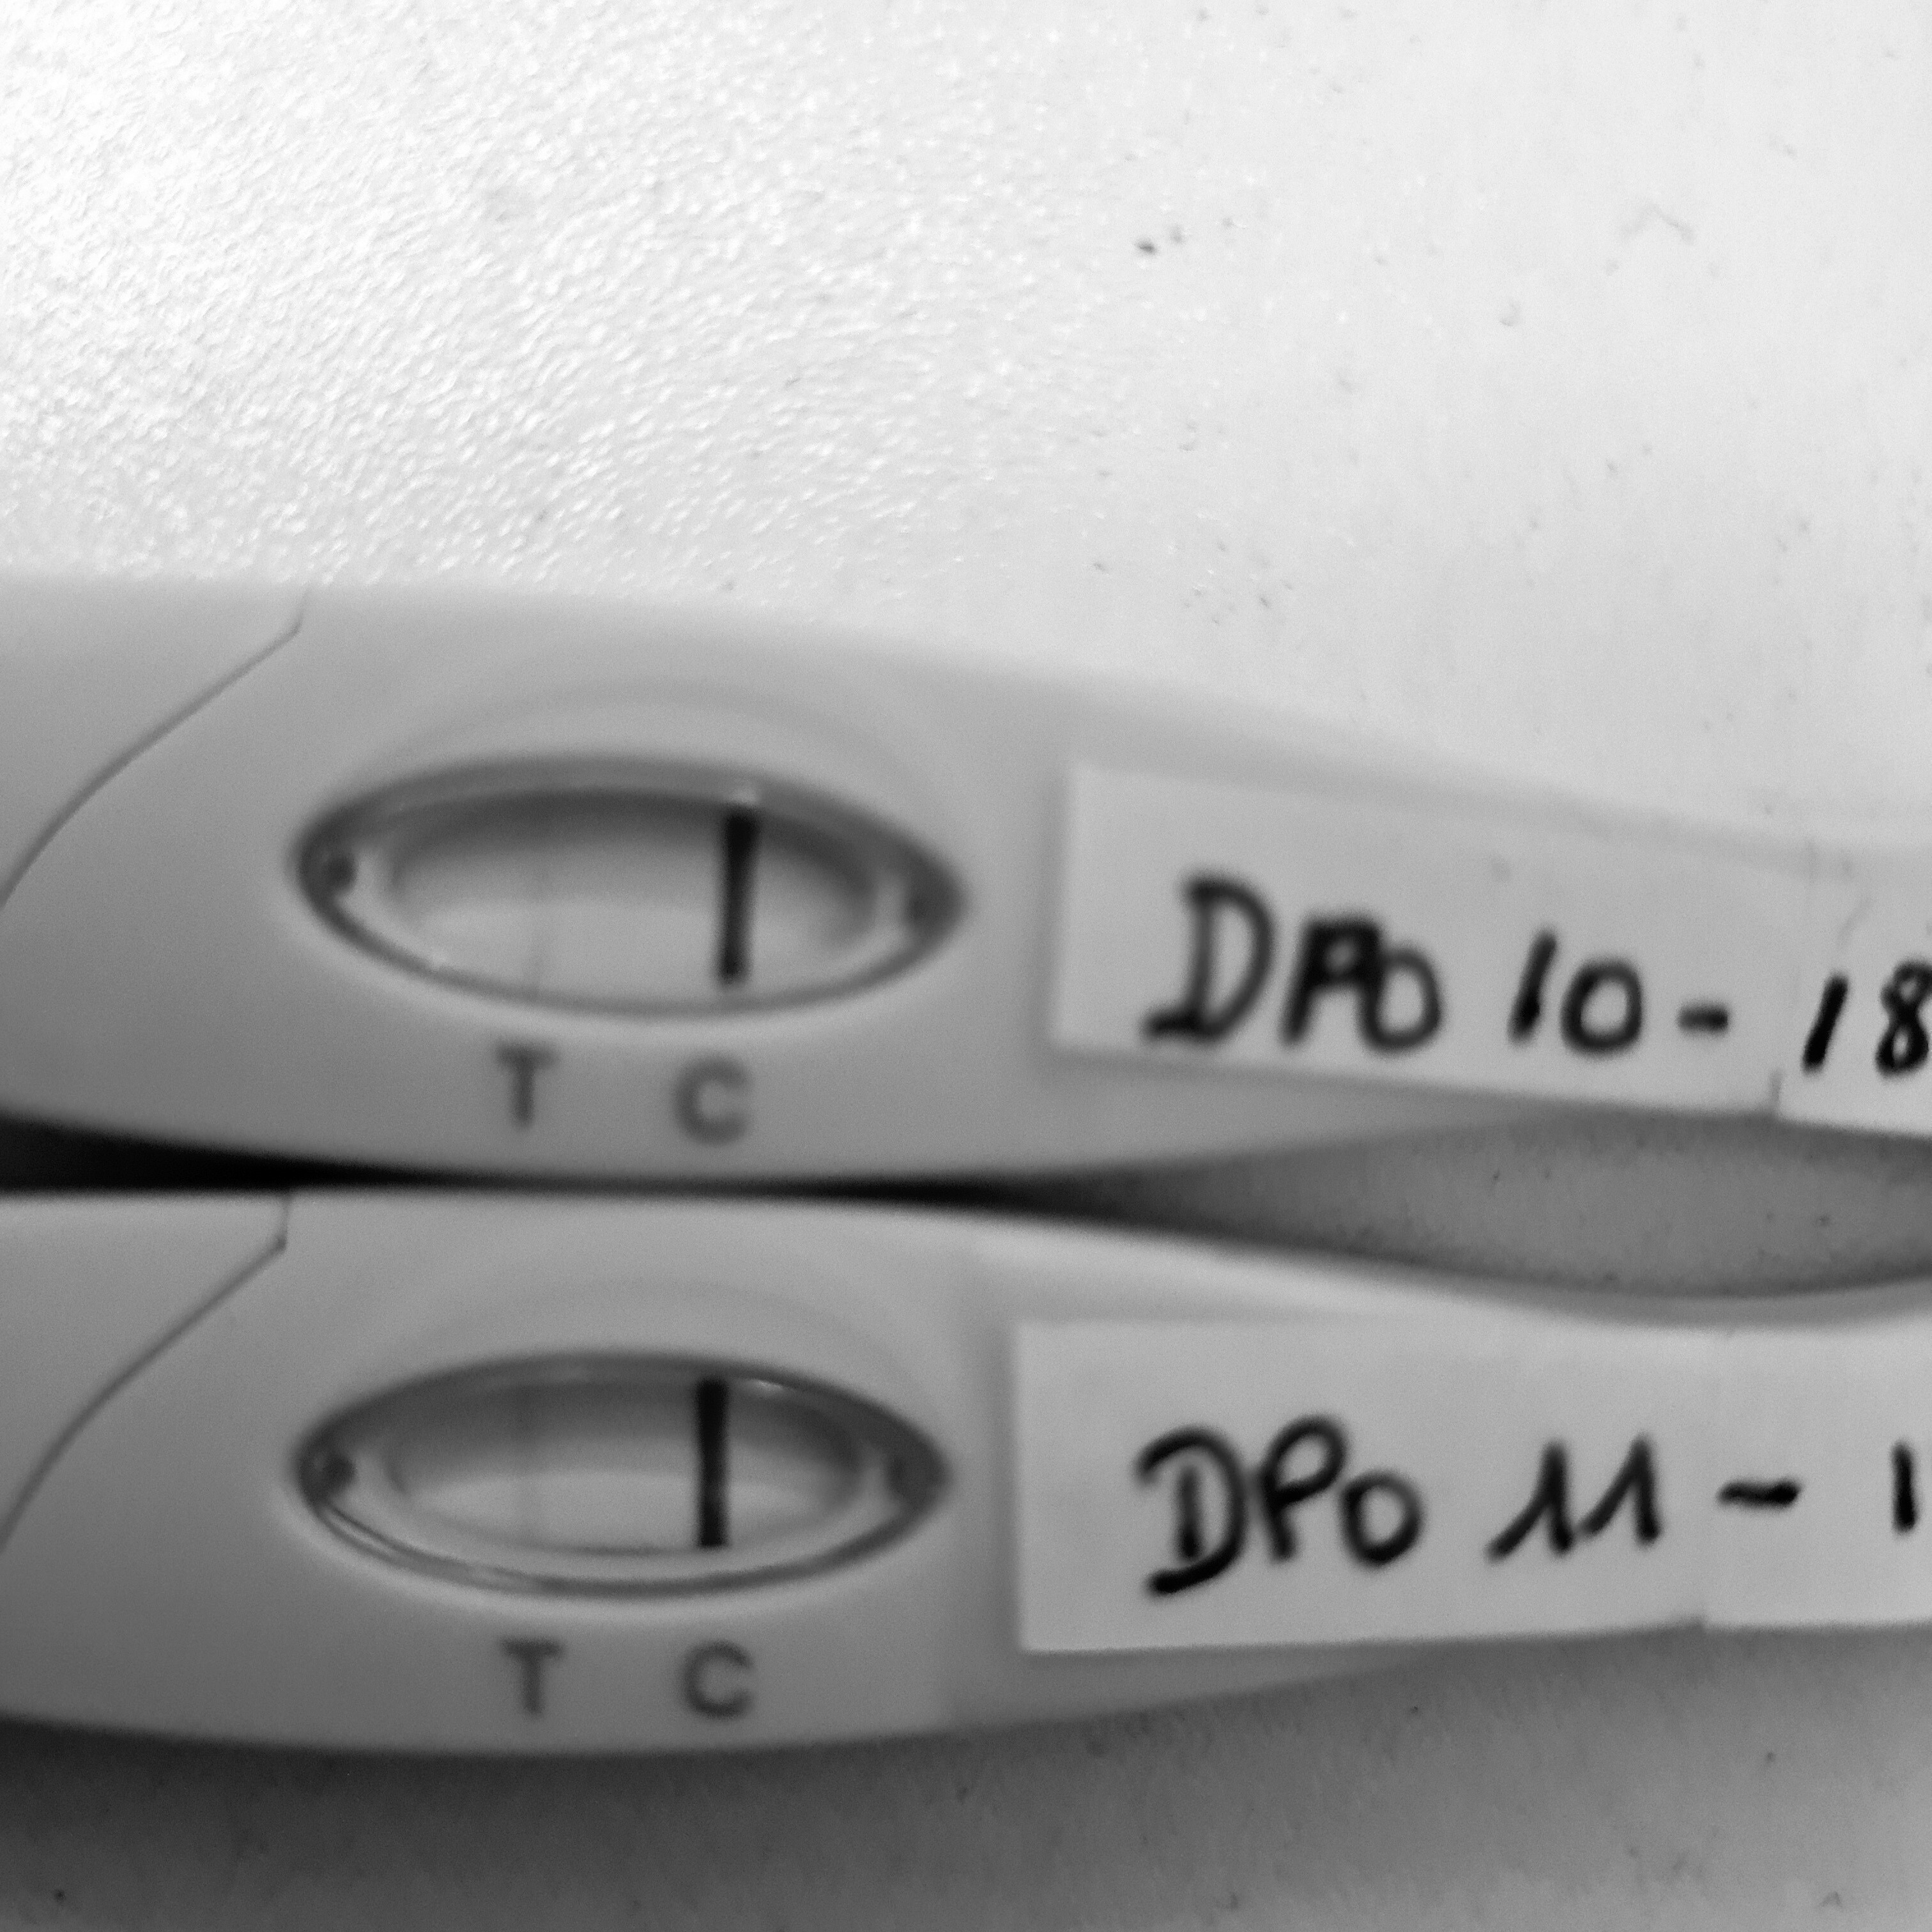 Test +++ a DPO 10 :) - Tests et symptômes de grossesse - FORUM ...